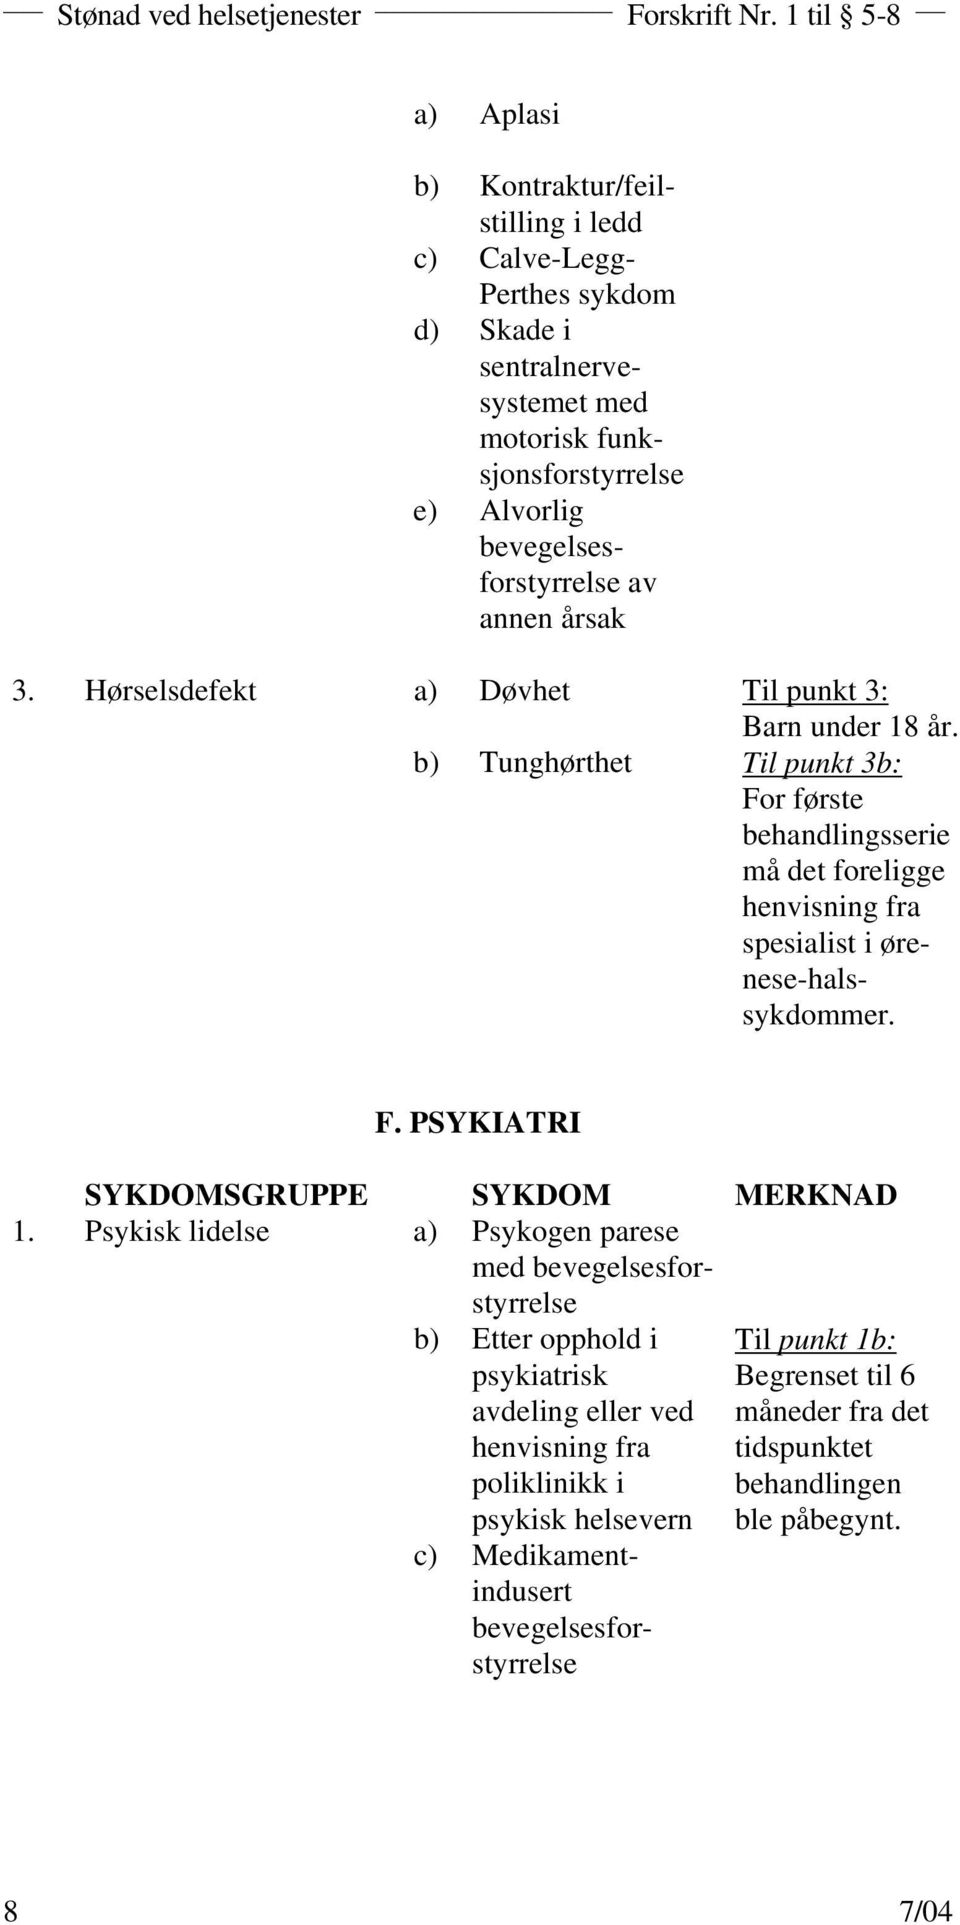 b) Tunghørthet Til punkt 3b: For første behandlingsserie må det foreligge henvisning fra spesialist i ørenese-halssykdommer. F. PSYKIATRI SYKDOMSGRUPPE SYKDOM MERKNAD 1.